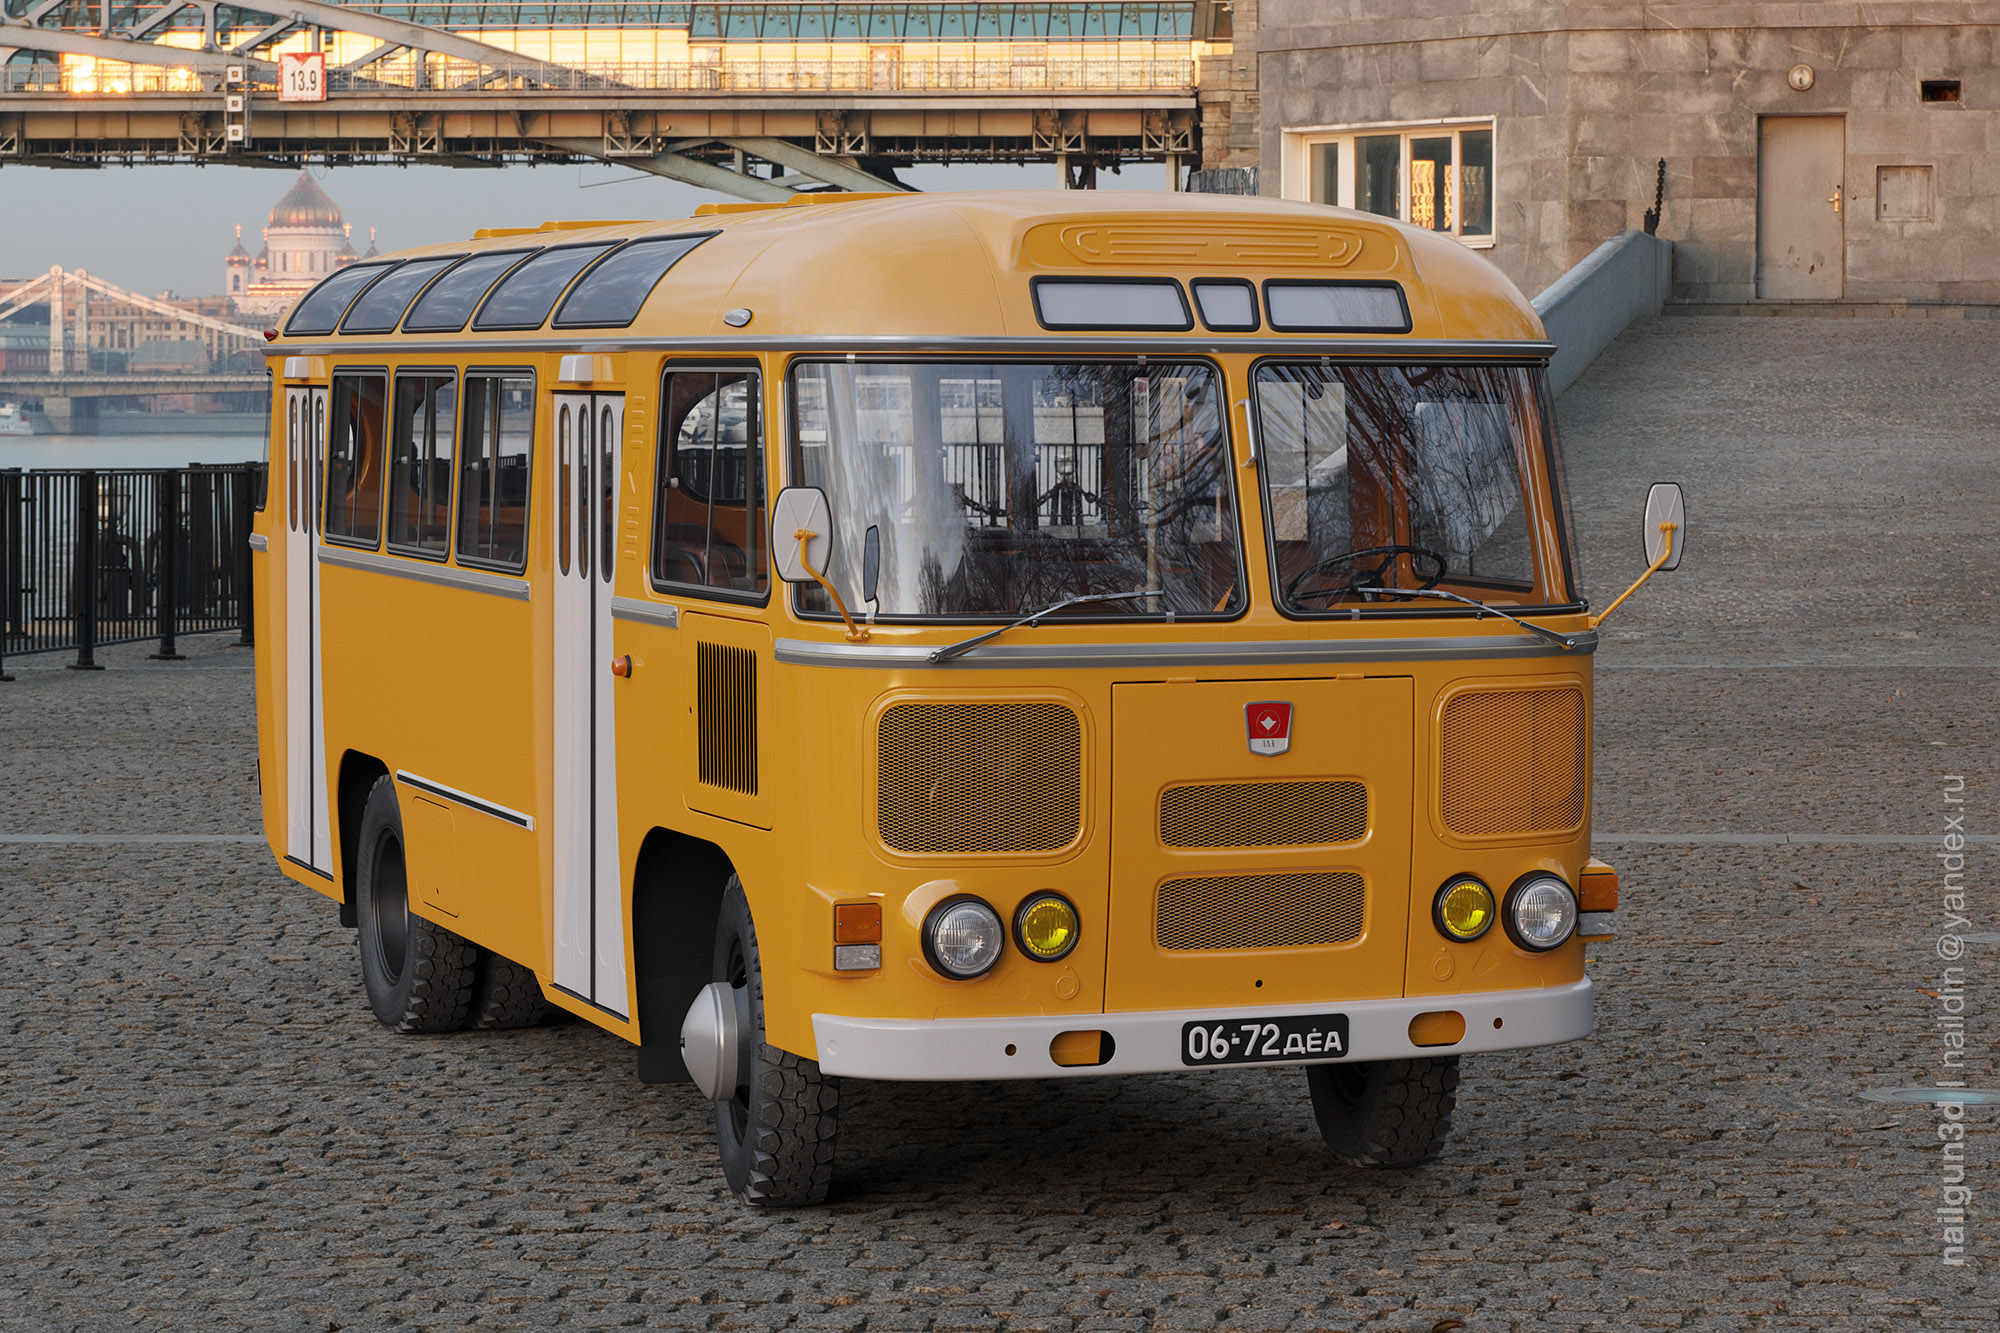 Паз автобус работа. ПАЗ 672. ПАЗ-672 желтый. ПАЗ-672 автобус. Старый пазик ПАЗ-672.